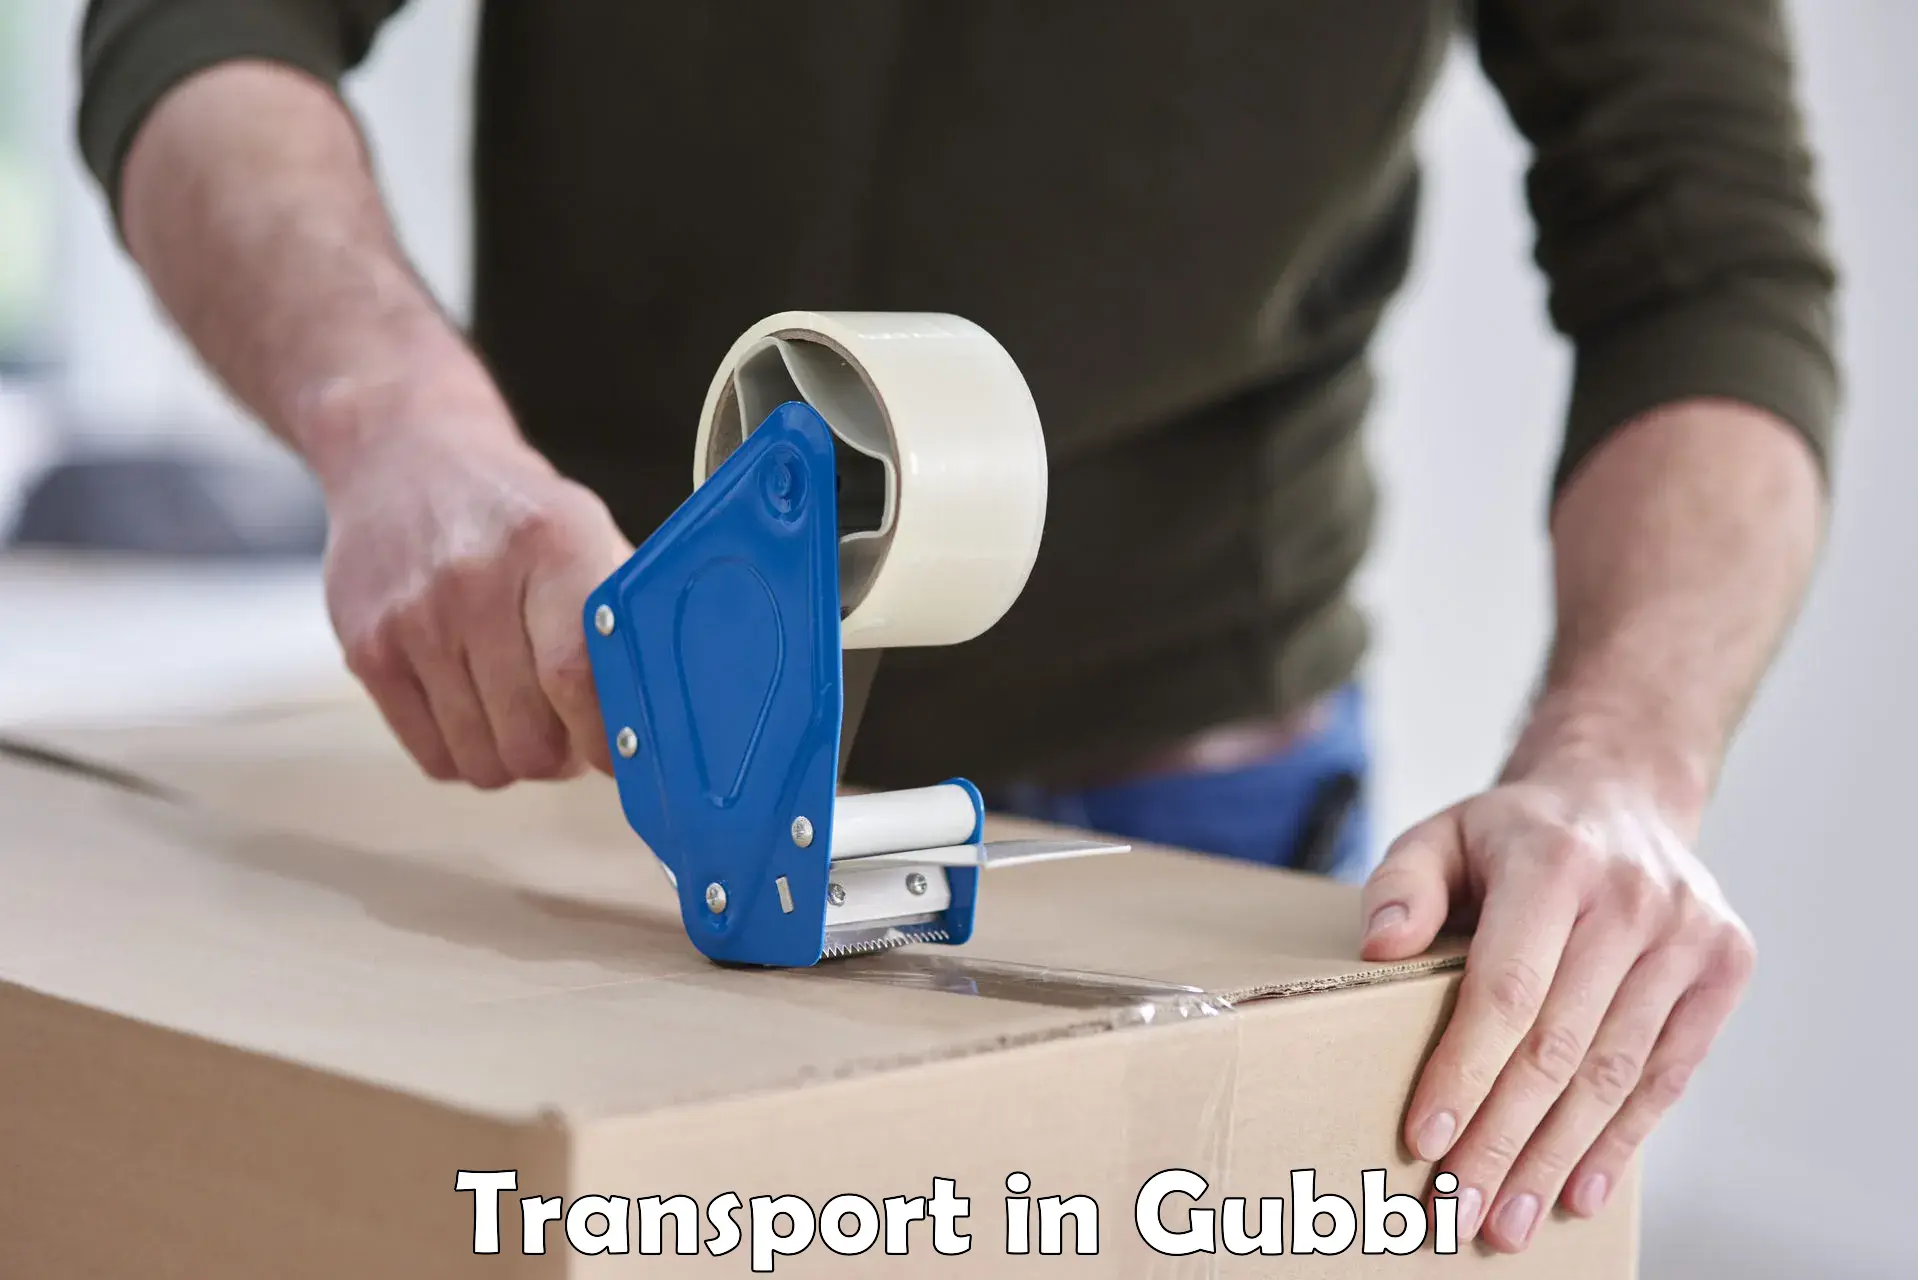 Goods transport services in Gubbi